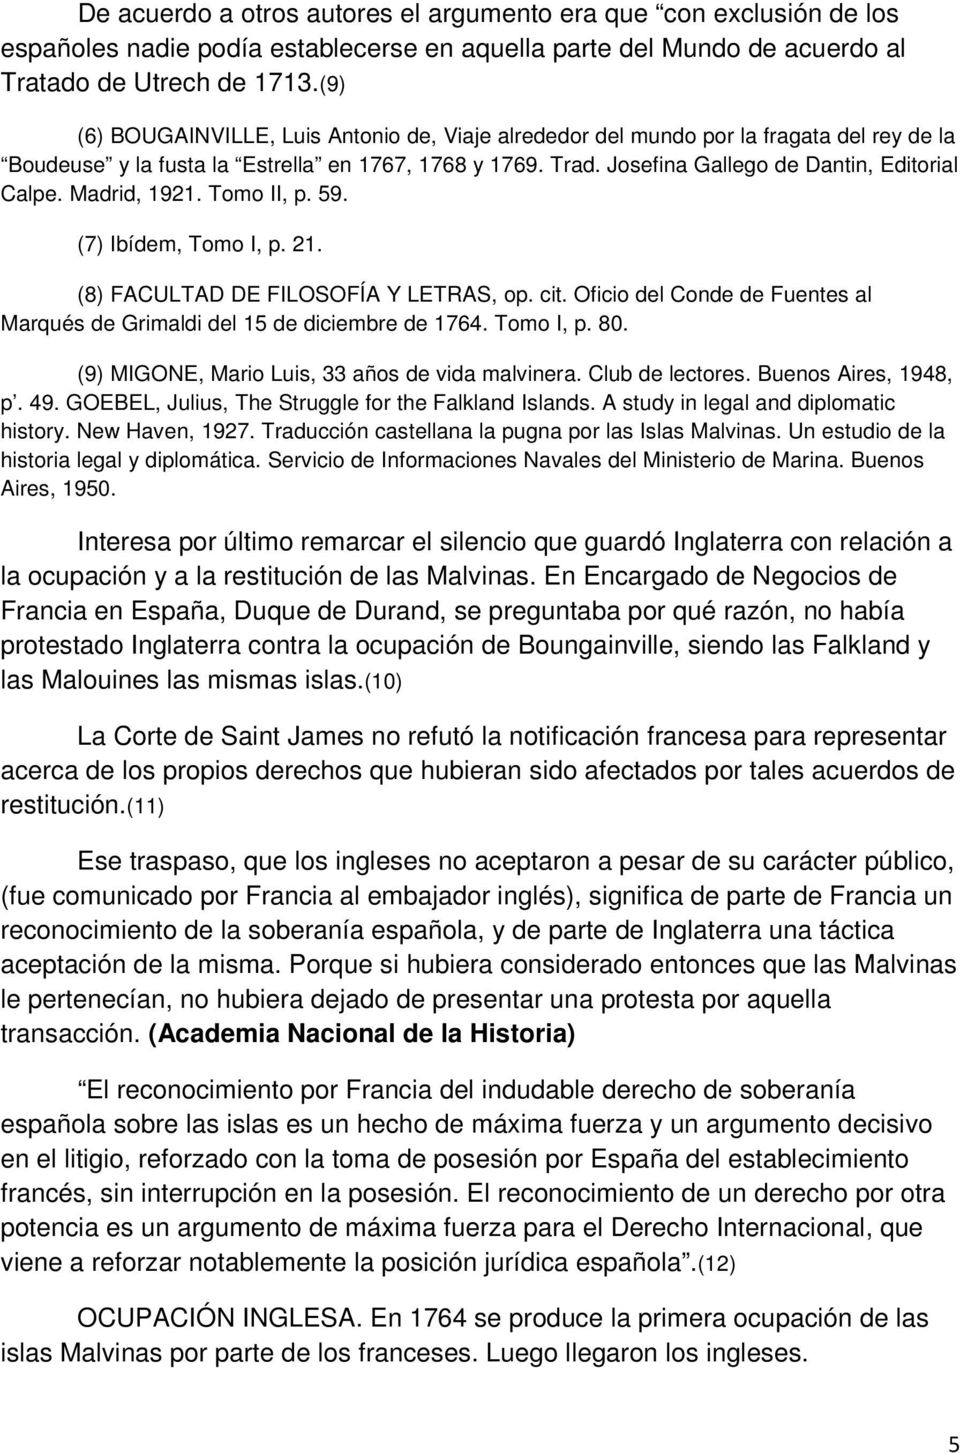 Madrid, 1921. Tomo II, p. 59. (7) Ibídem, Tomo I, p. 21. (8) FACULTAD DE FILOSOFÍA Y LETRAS, op. cit. Oficio del Conde de Fuentes al Marqués de Grimaldi del 15 de diciembre de 1764. Tomo I, p. 80.